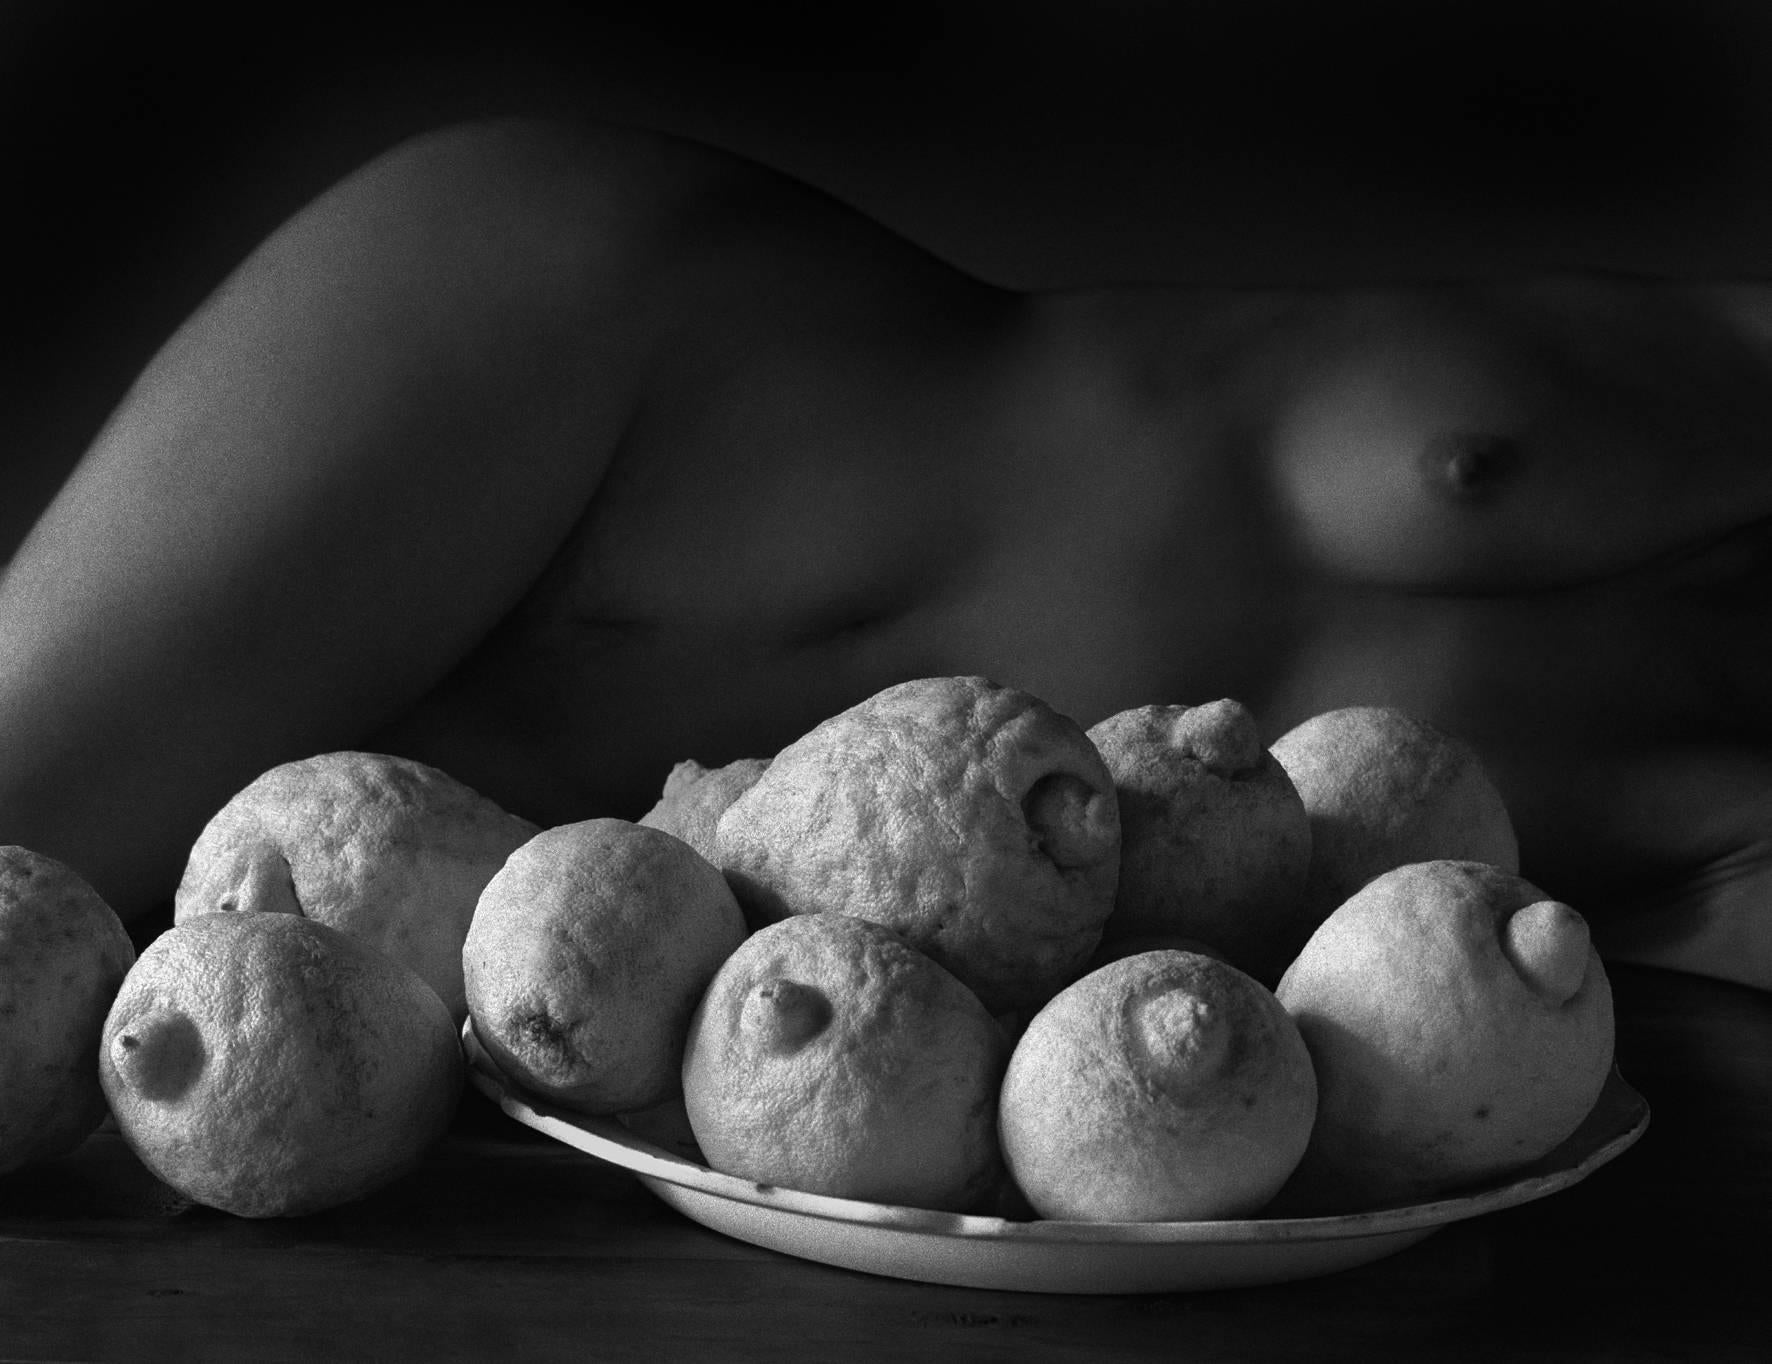 Flor Garduño Nude Photograph - Los limones